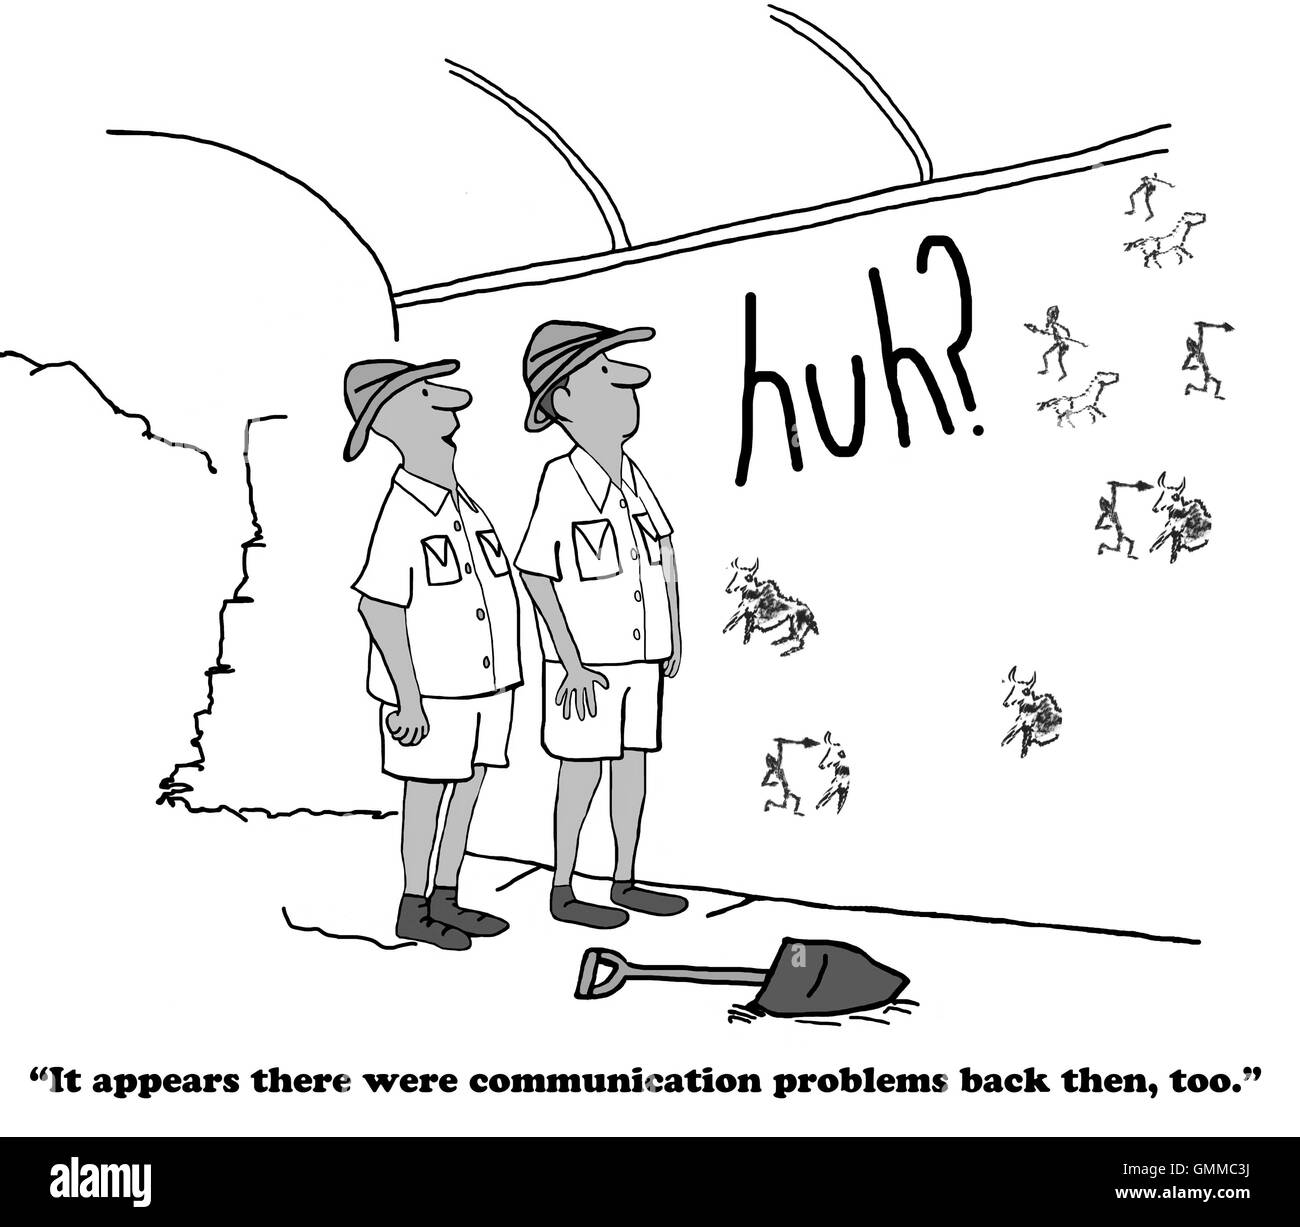 Business-Cartoon zeigt das Wort "huh" unter Höhle Zeichnungen. Stockfoto